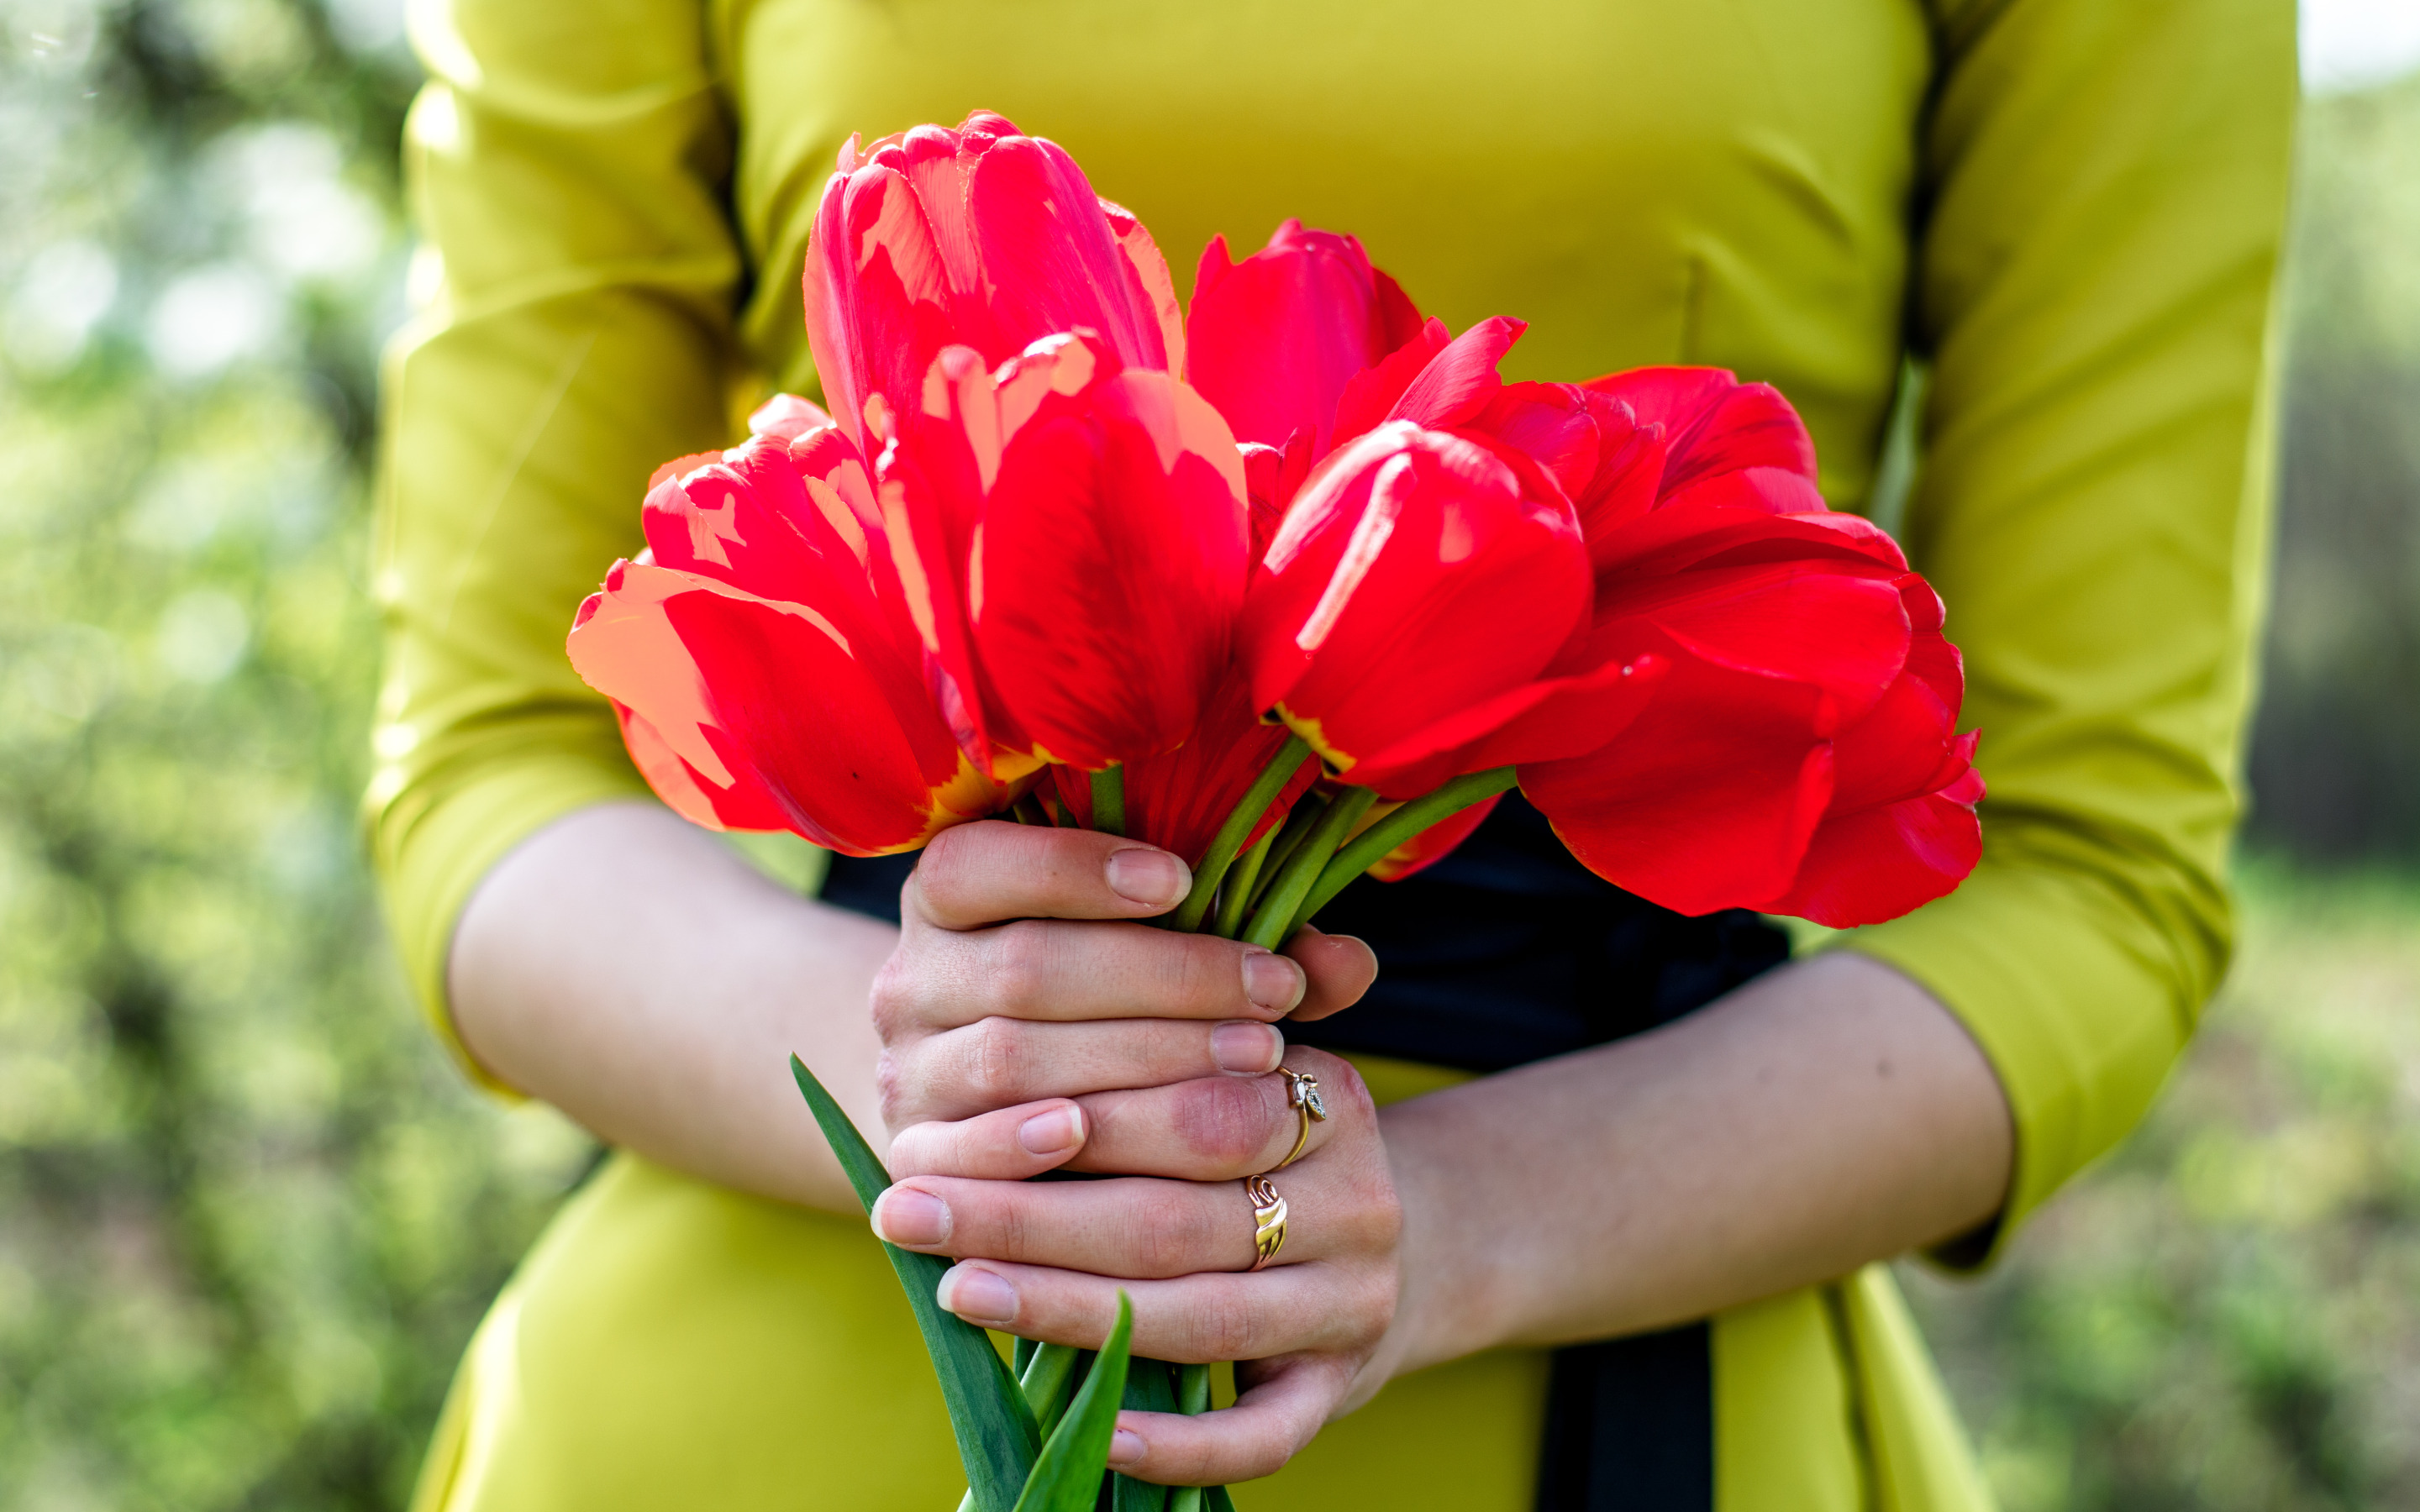 Дарите женщинам цветы jazzdauren где послушать. Цветок на руку.. Букет цветов для девушки. Букет тюльпанов. Букет тюльпанов в руках.